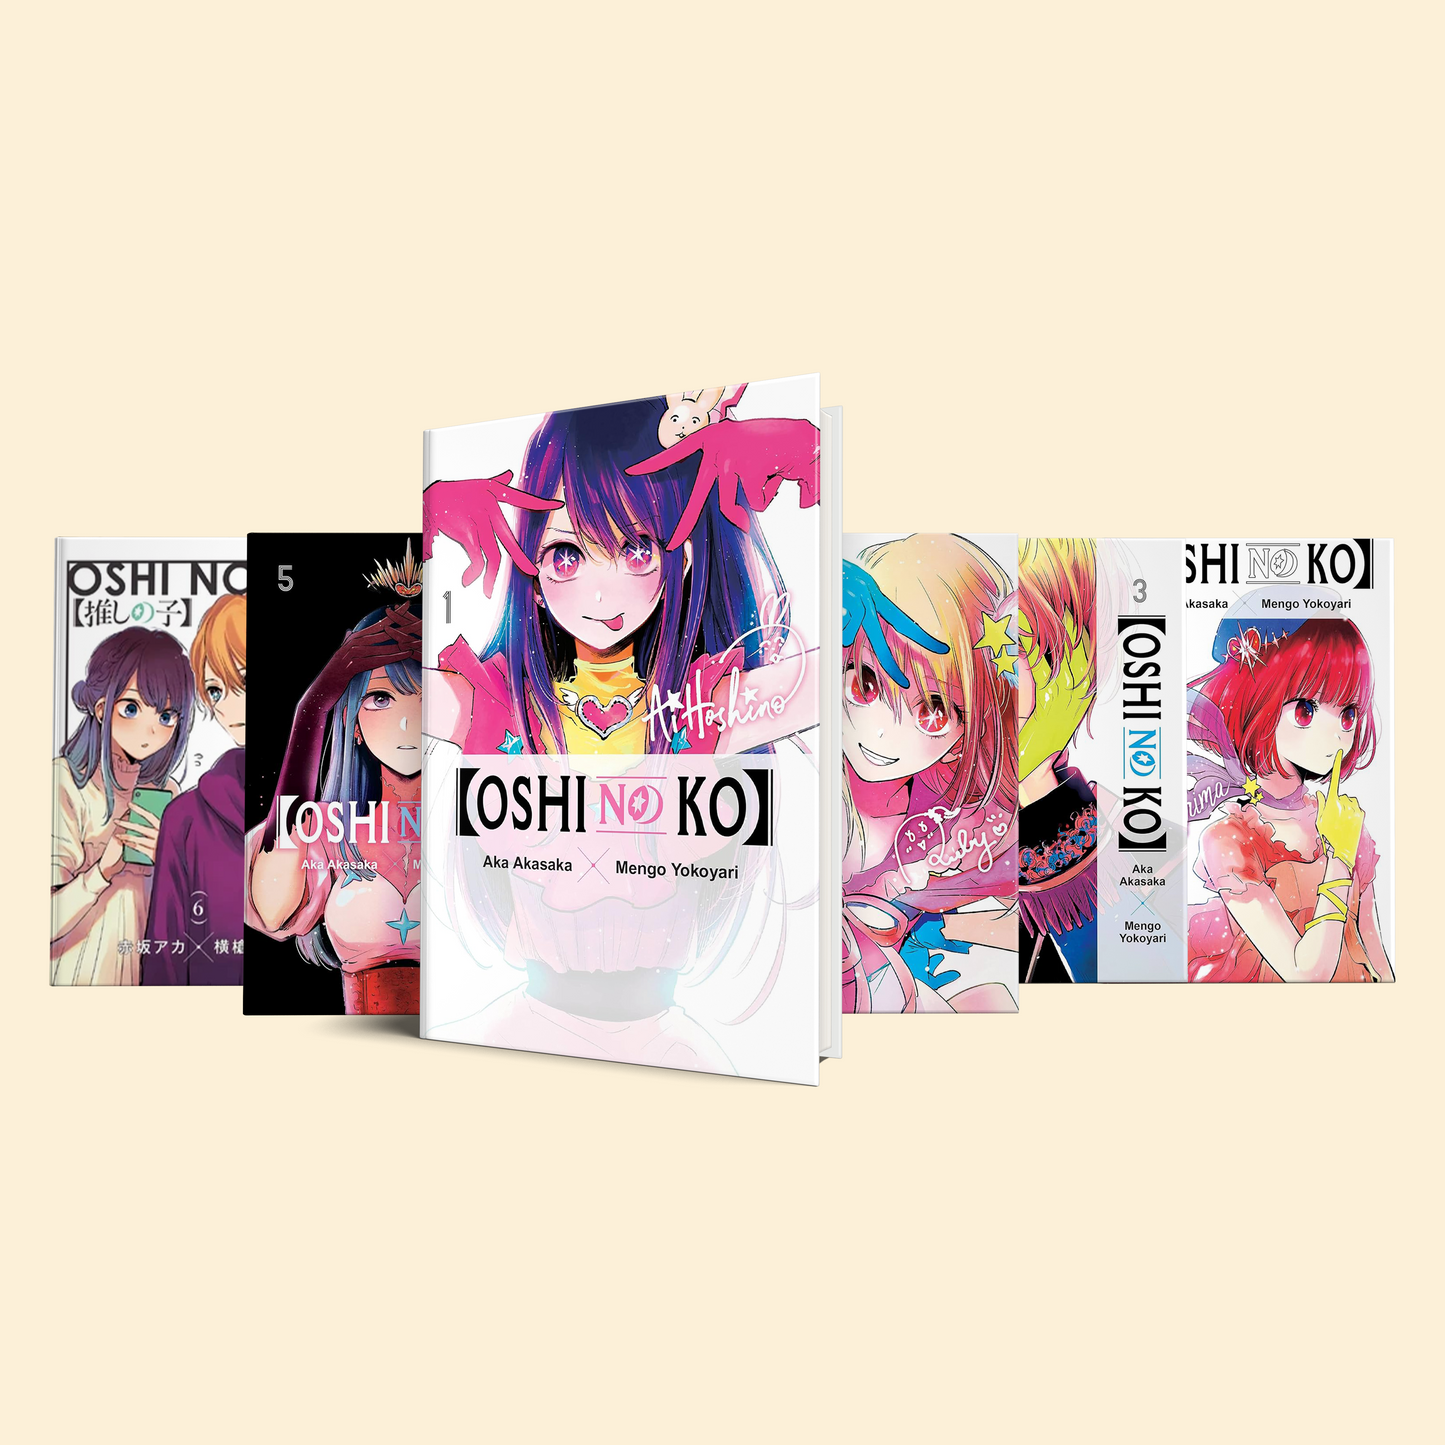 Oshi No Ko 6 Volumes (Volume 1-6)